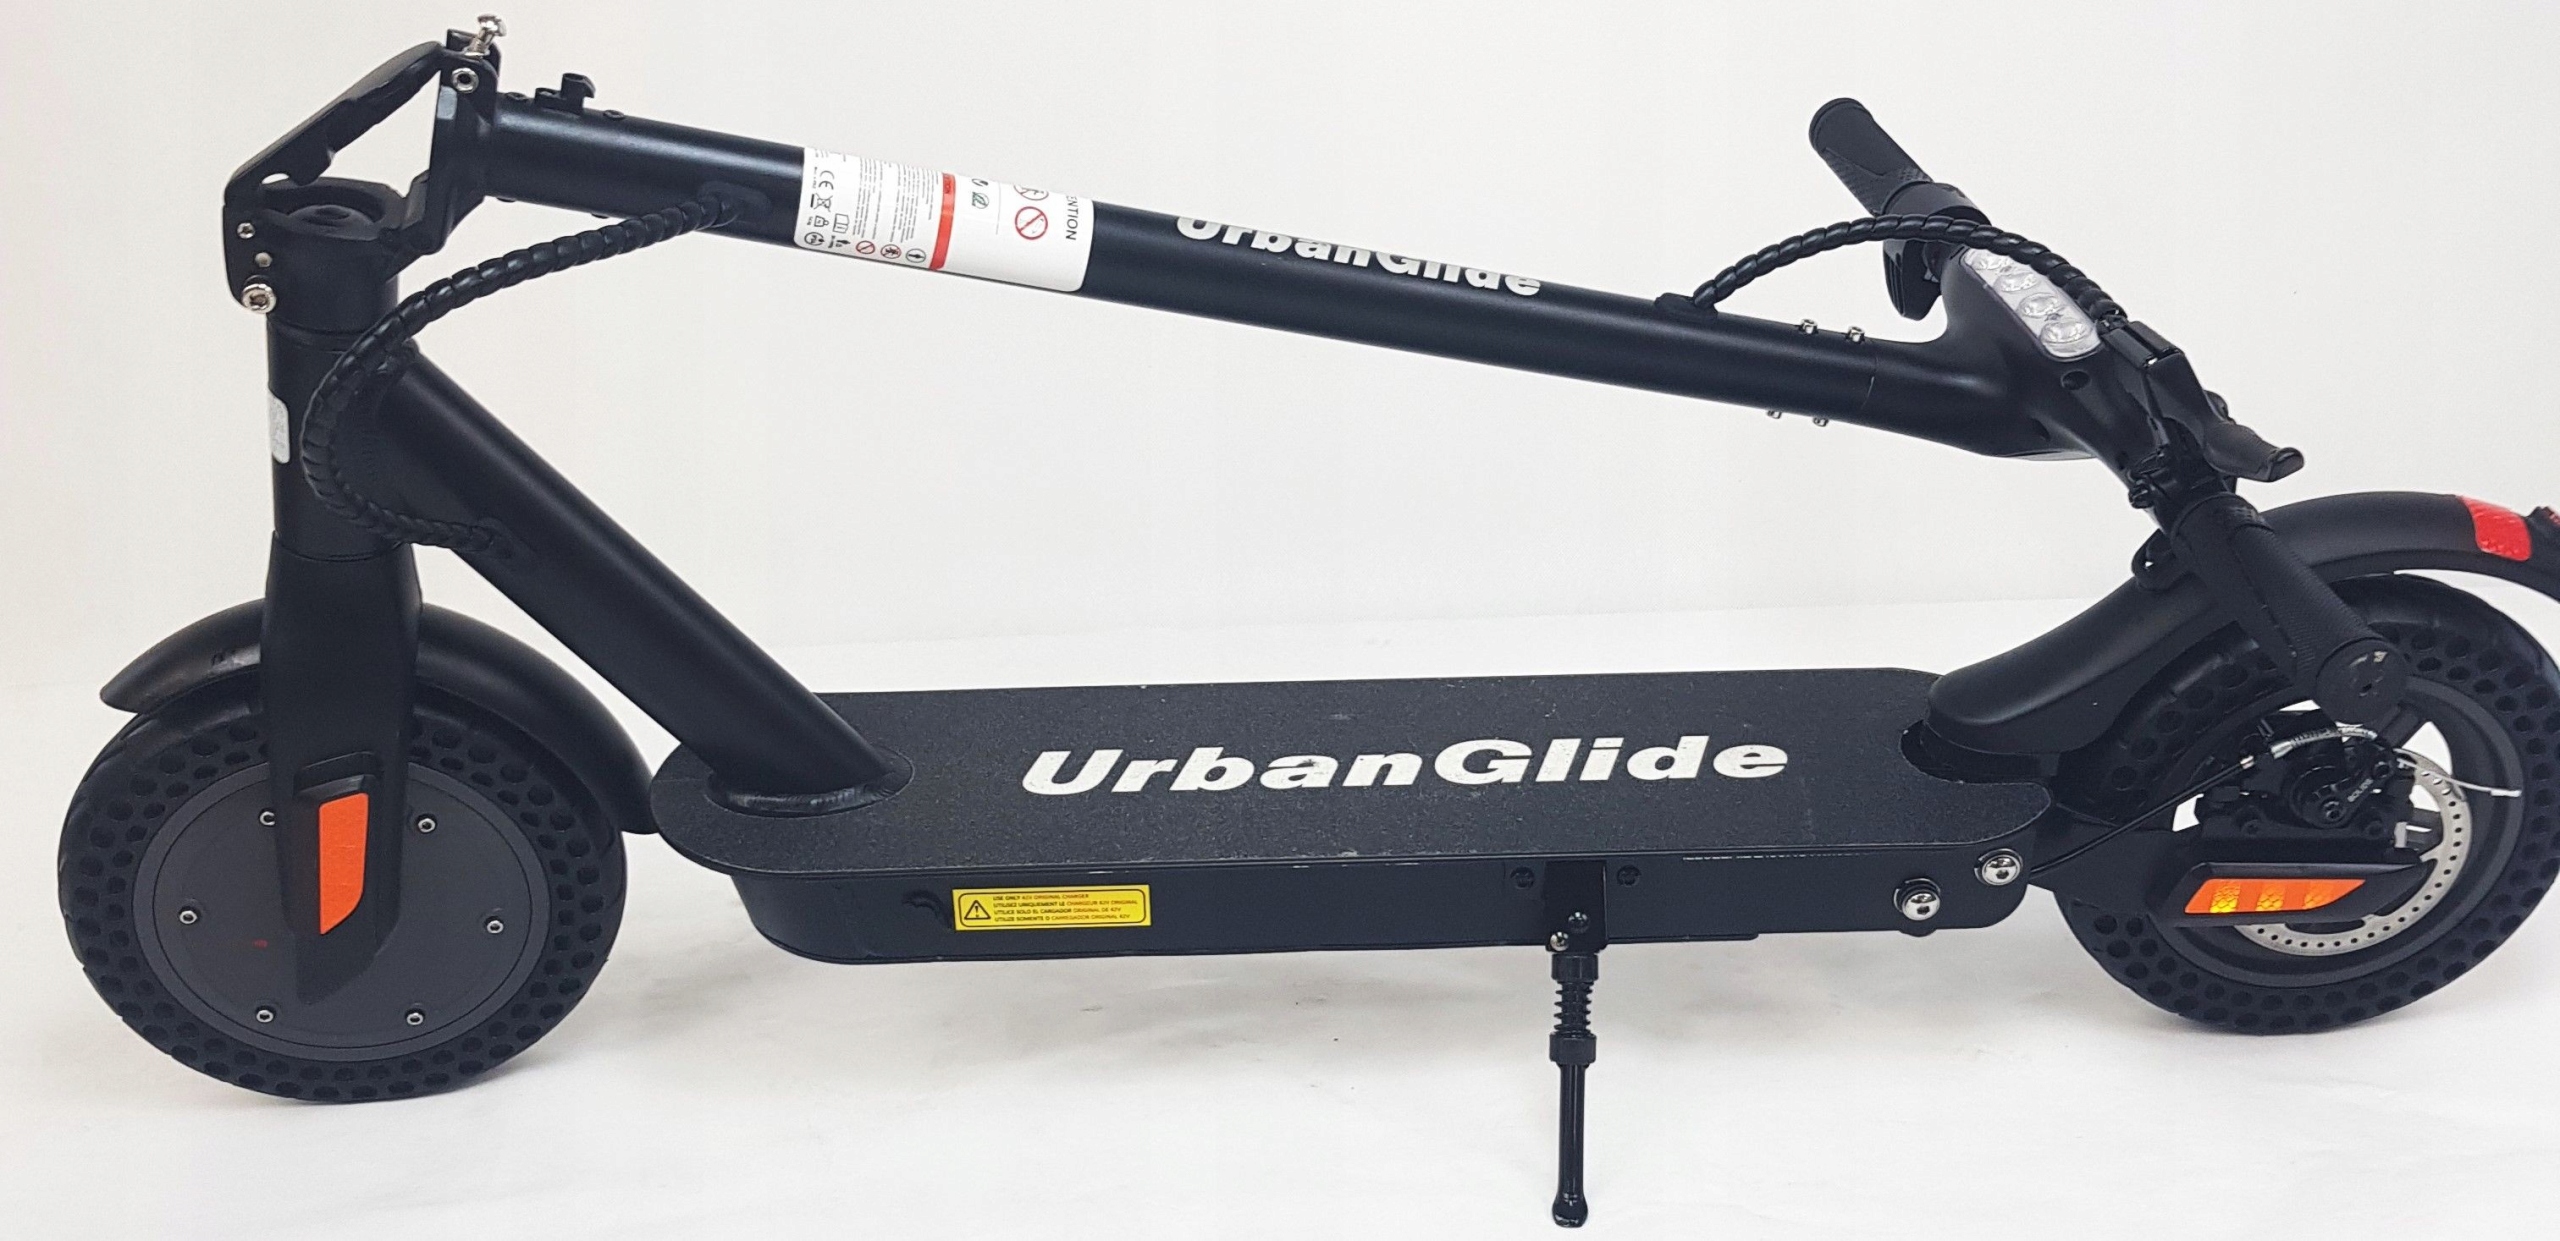 Hulajnoga Elektryczna Urban Glide RIDE-100XS 120kg - 5905255776876 -  14376382732 